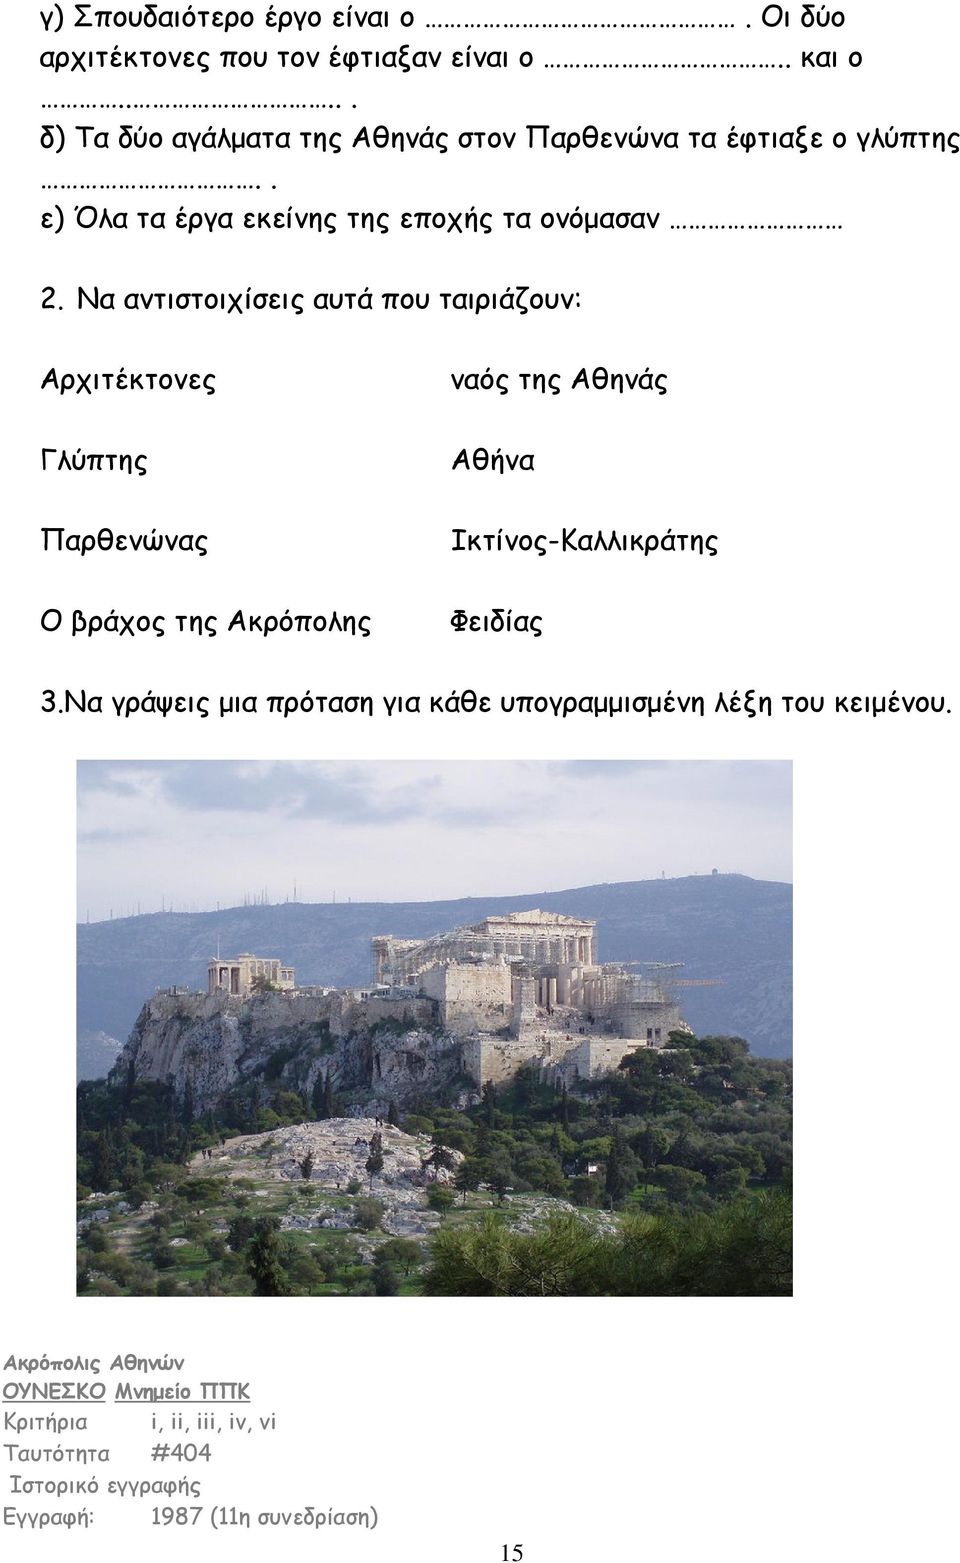 Να αντιστοιχίσεις αυτά που ταιριάζουν: Αρχιτέκτονες Γλύπτης Παρθενώνας Ο βράχος της Ακρόπολης ναός της Αθηνάς Αθήνα Ικτίνος-Καλλικράτης